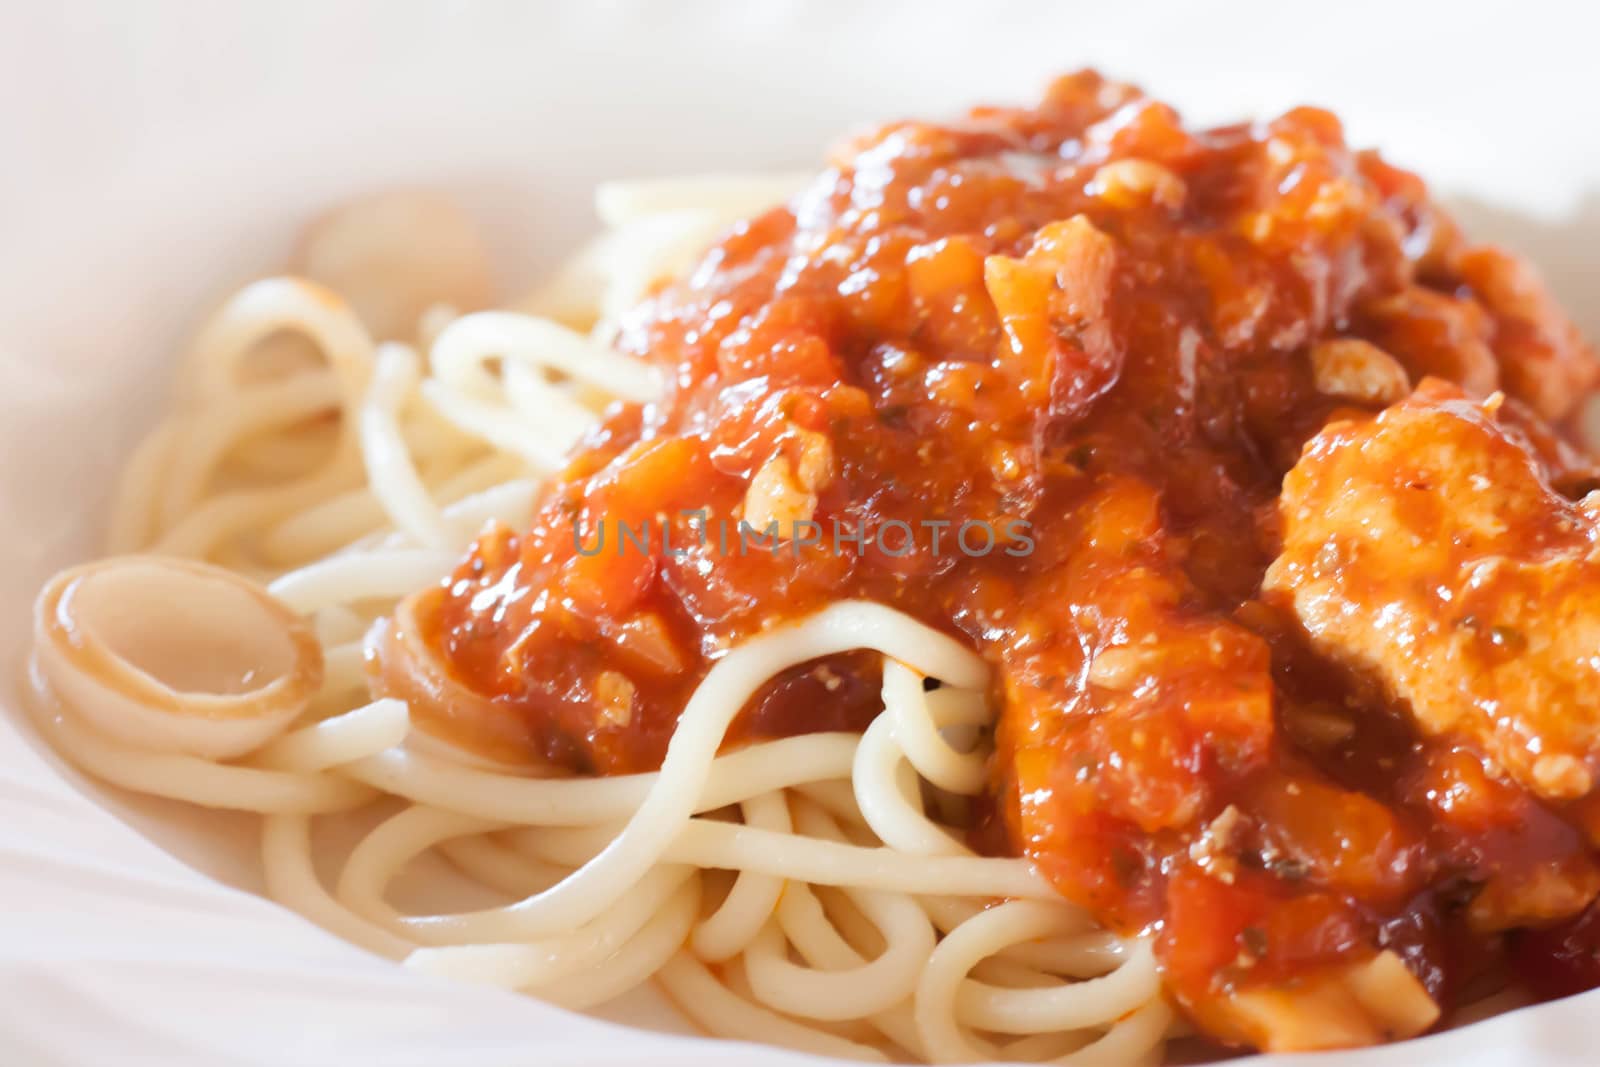 Spaghetti with tomato sauce. by primzrider